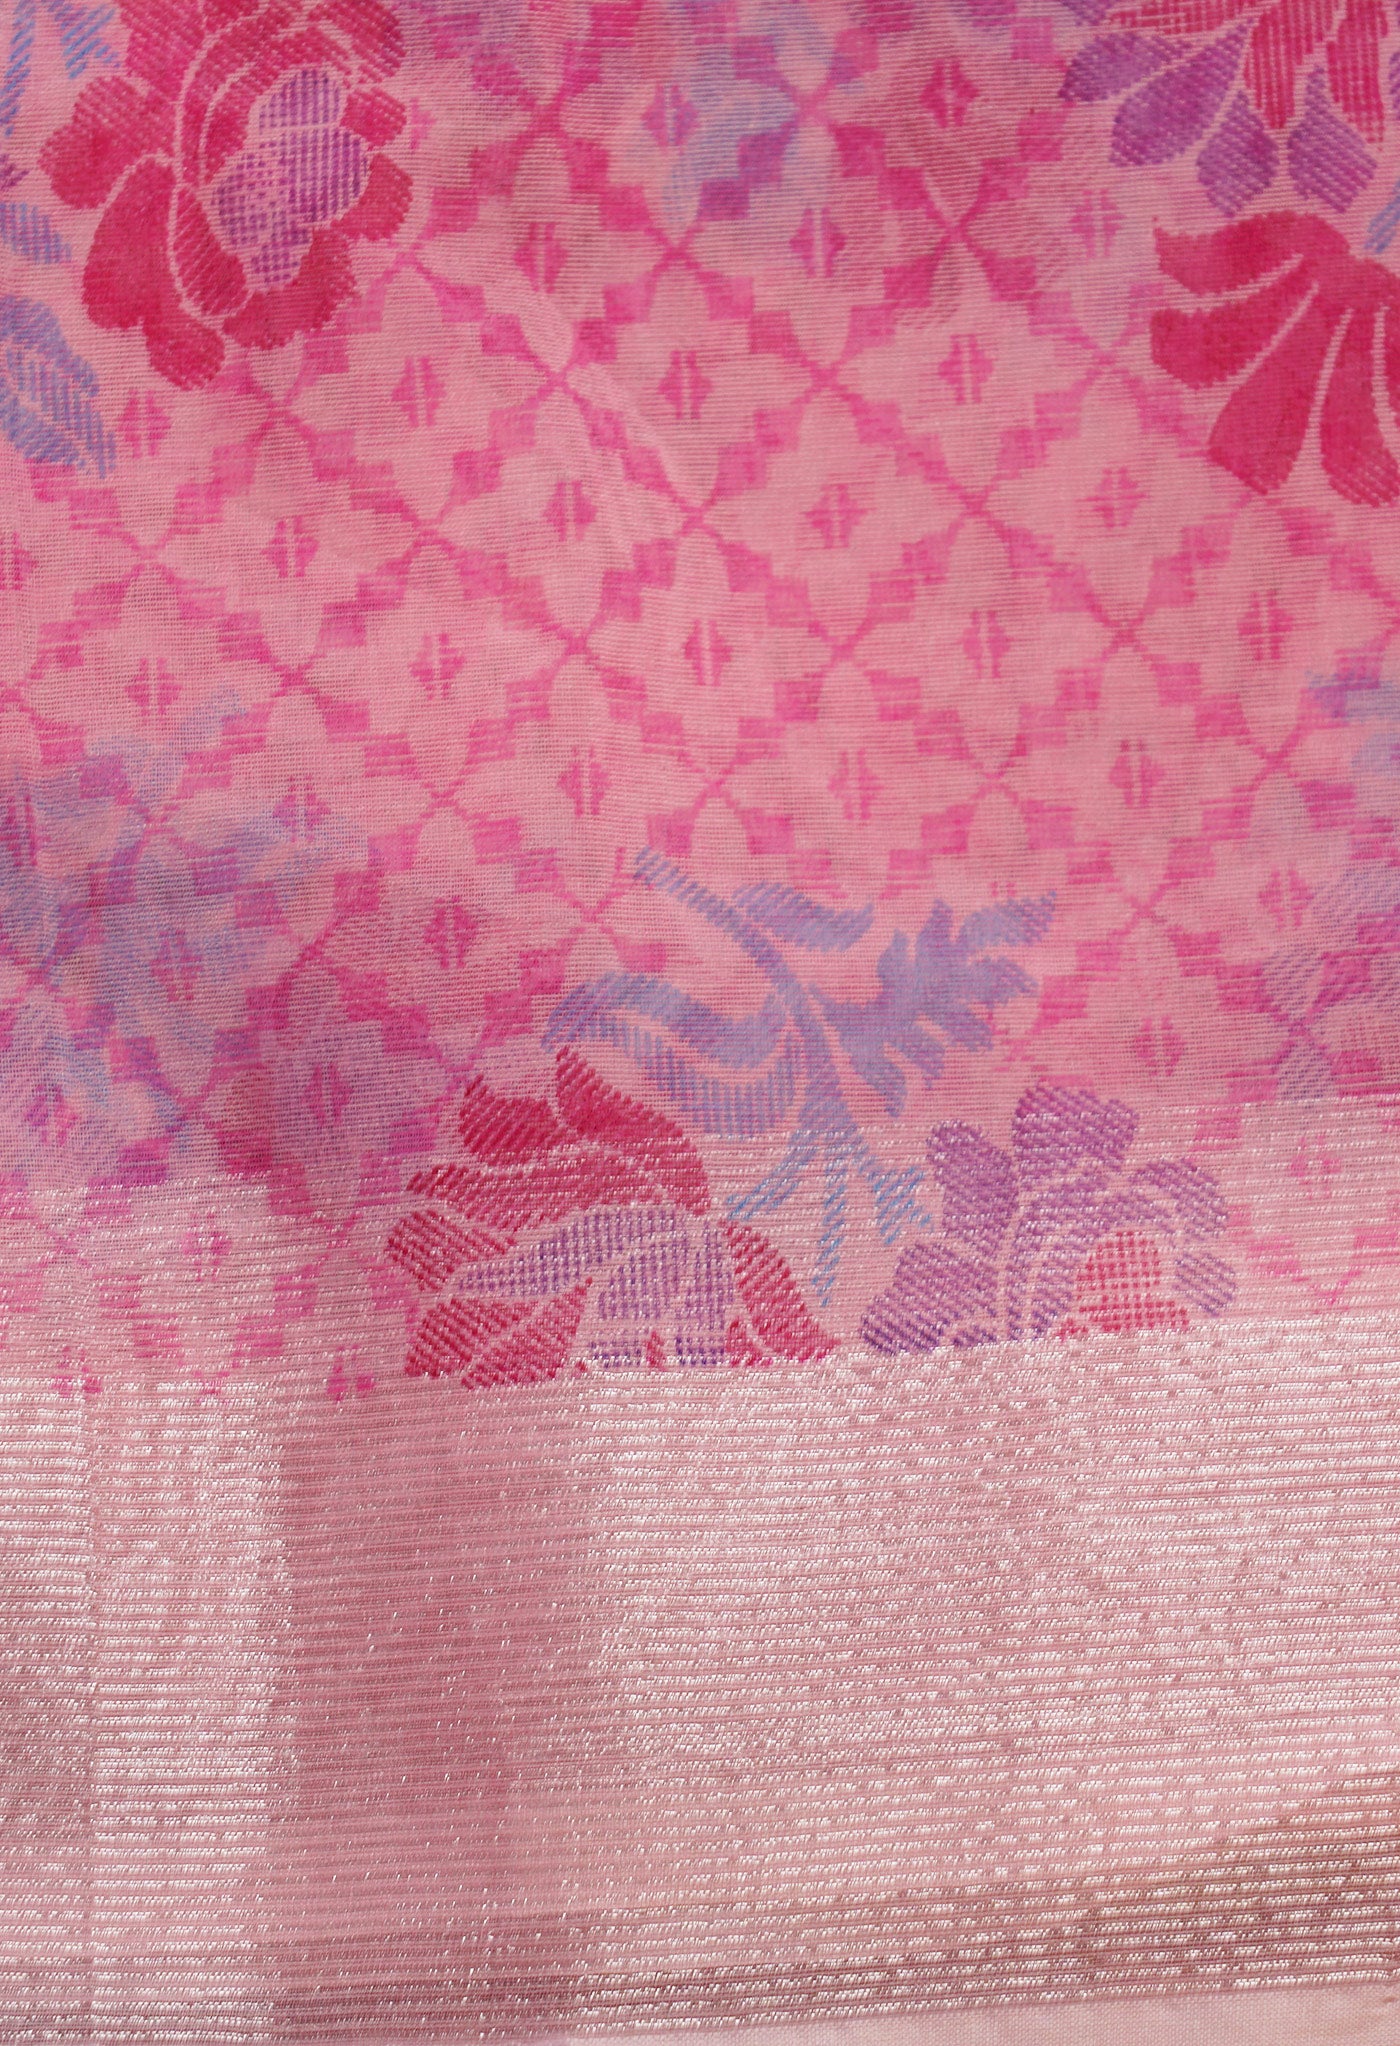 Pink Screen Printed Organza Saree